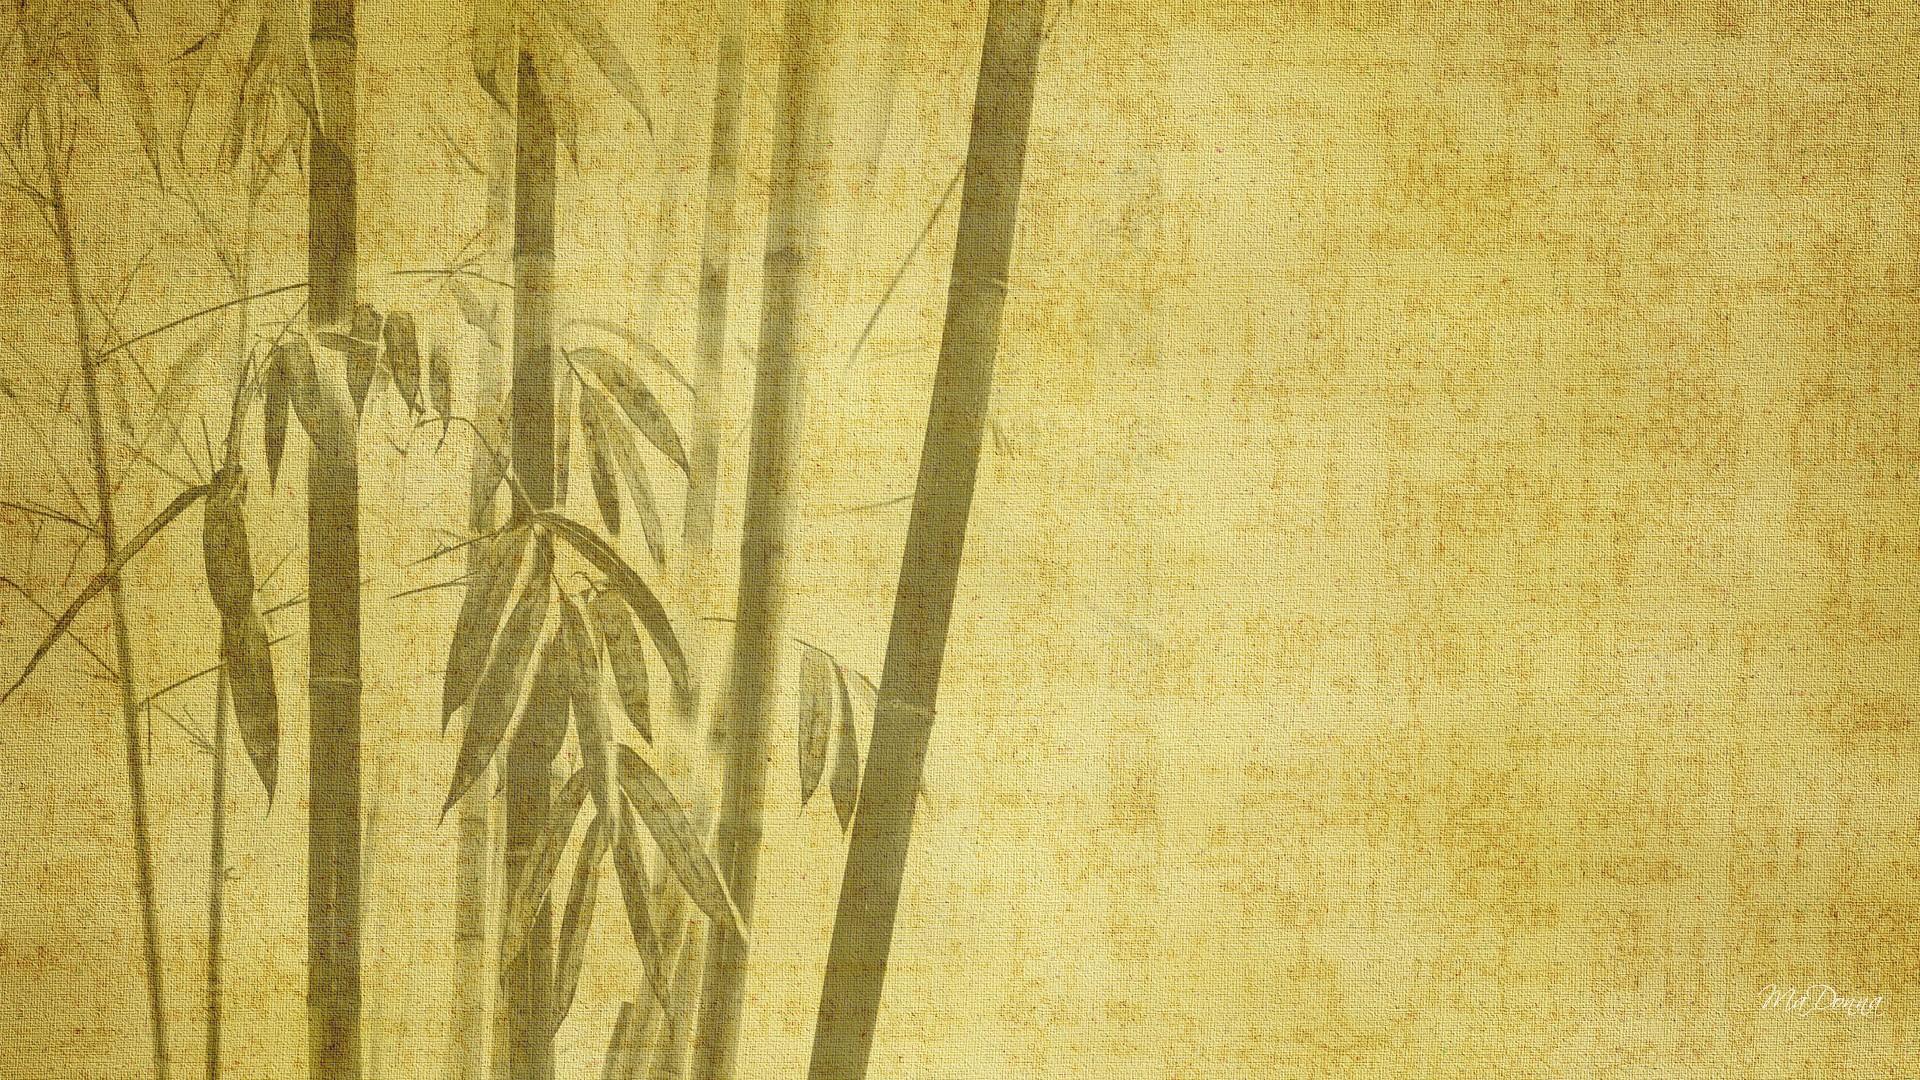 HD Simple bamboo iii Wallpaper Free